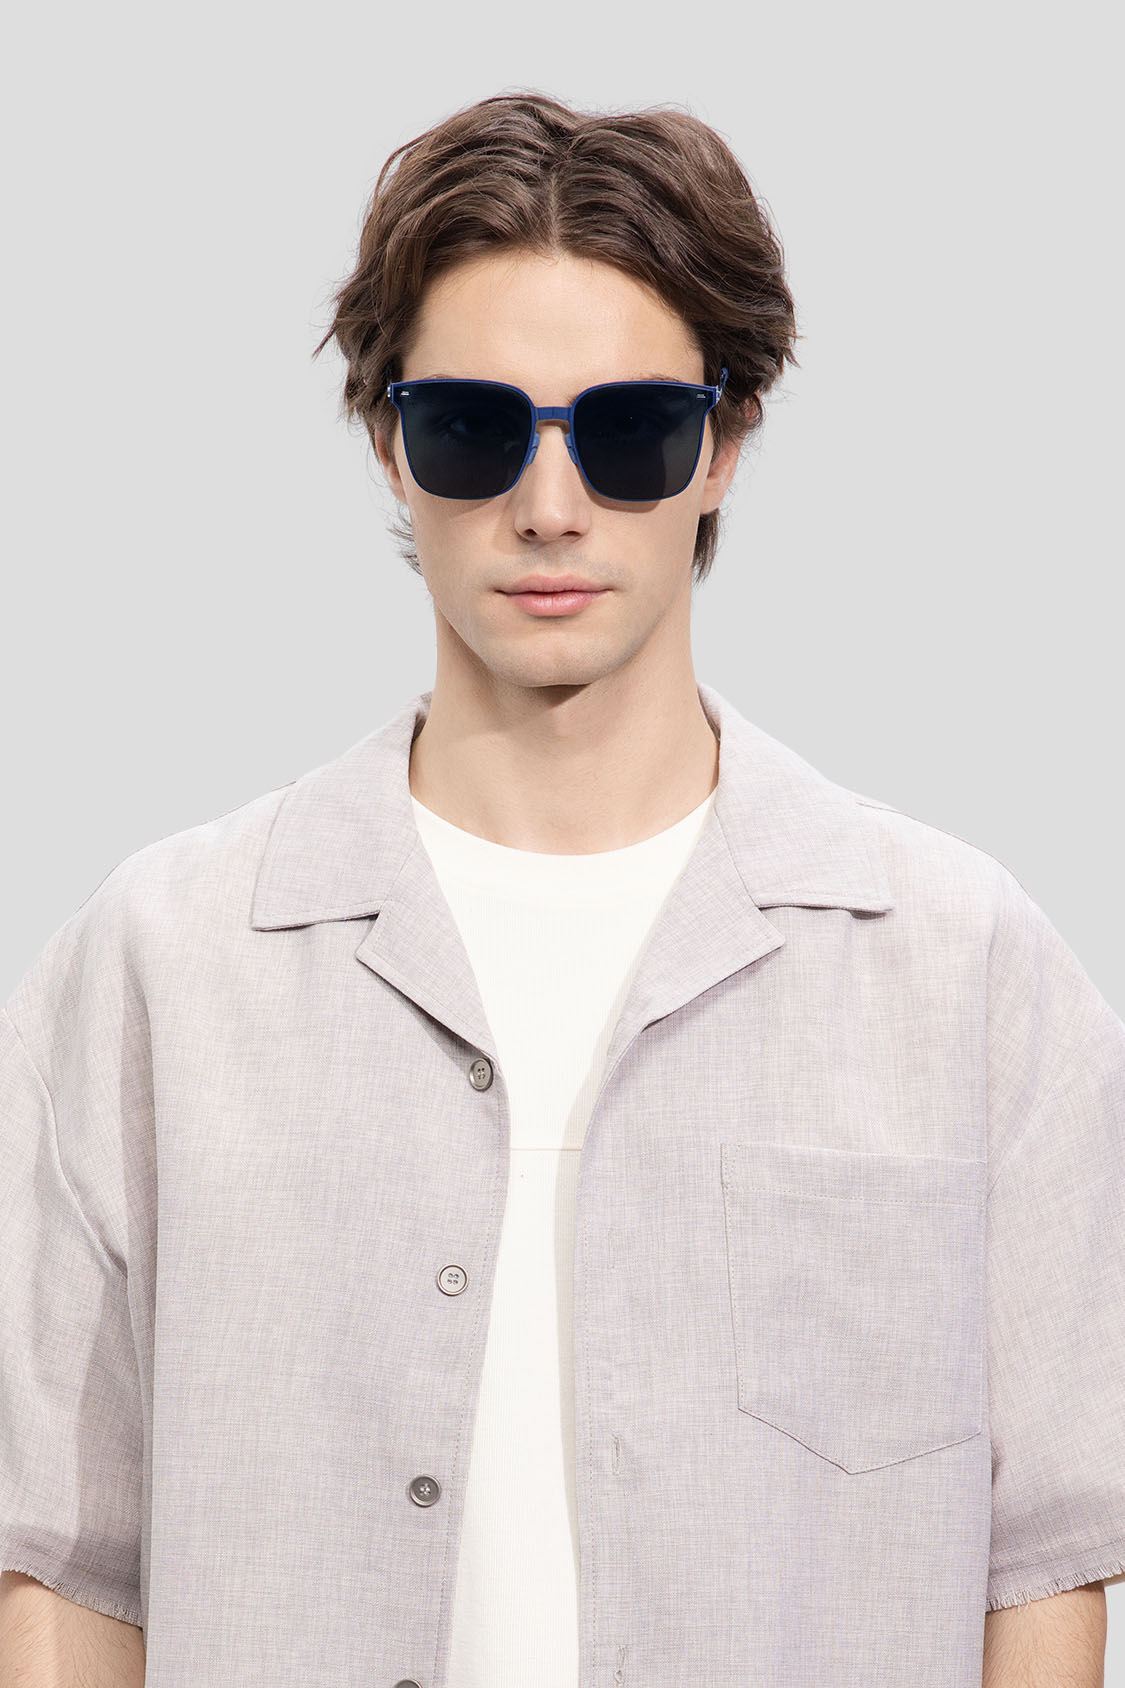 beneunder men's slimline polarized folding sunglasses shades #color_ink blue